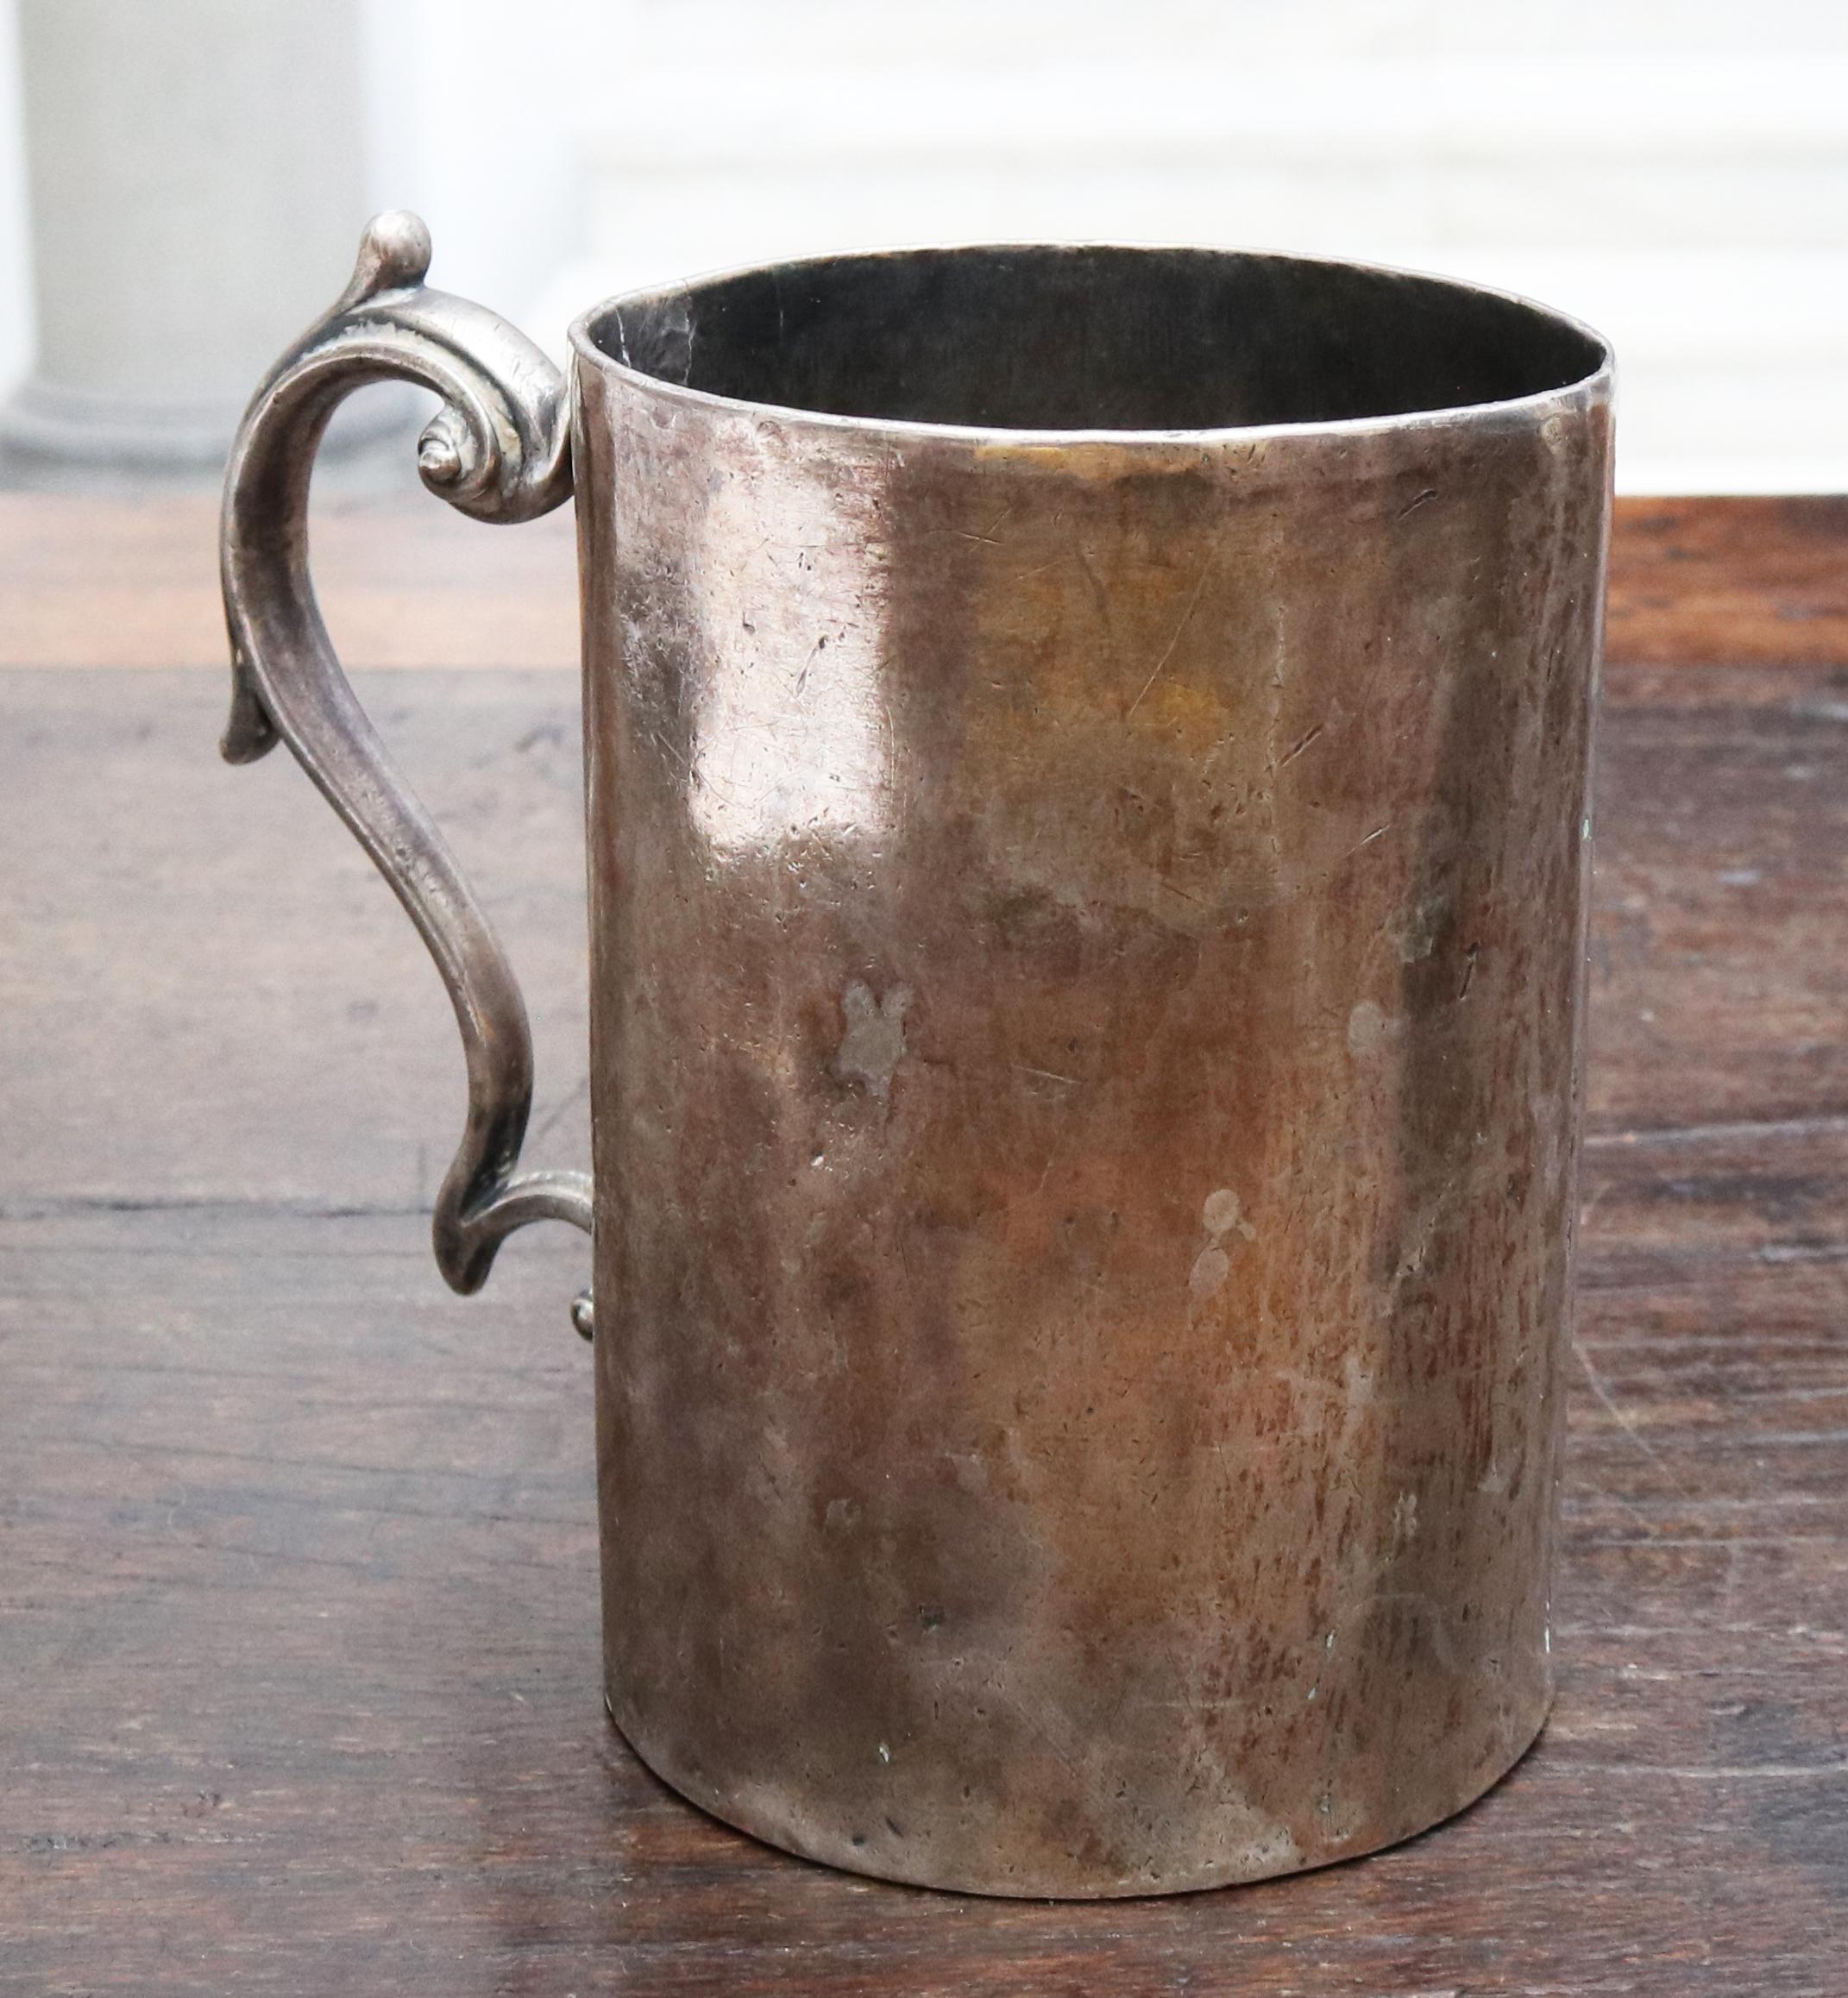 silberbecher mit Henkel aus dem 18. Jahrhundert:: möglicherweise aus Bolivien. 

Silber insgesamt nach Gewicht: 450g